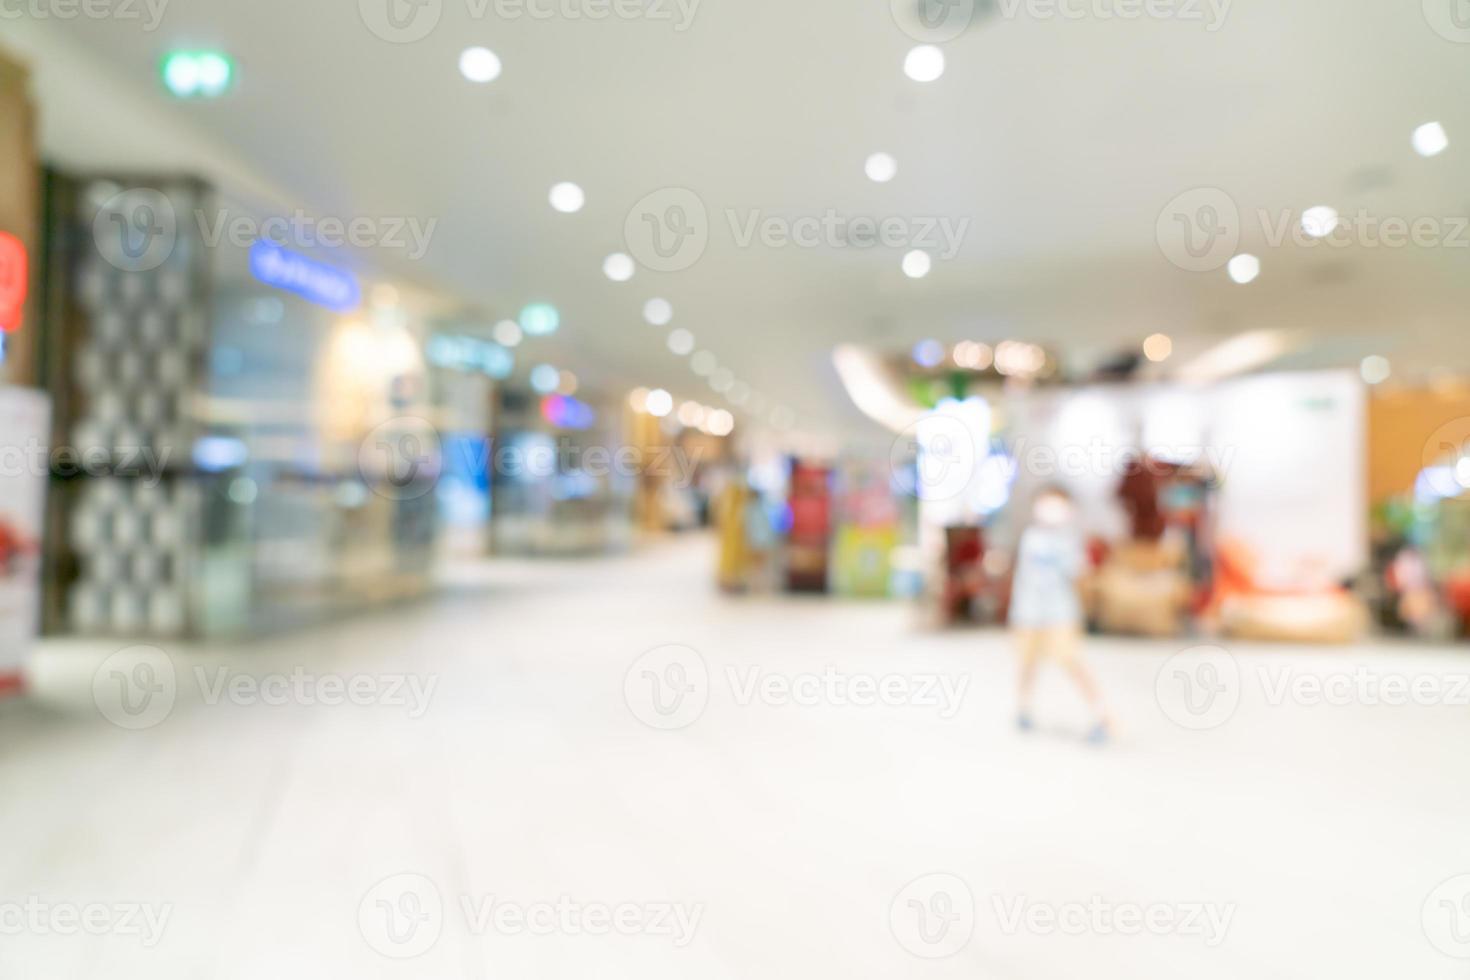 abstrakt oskärpa och oskärpa lyxiga köpcentrum och butik för bakgrund foto